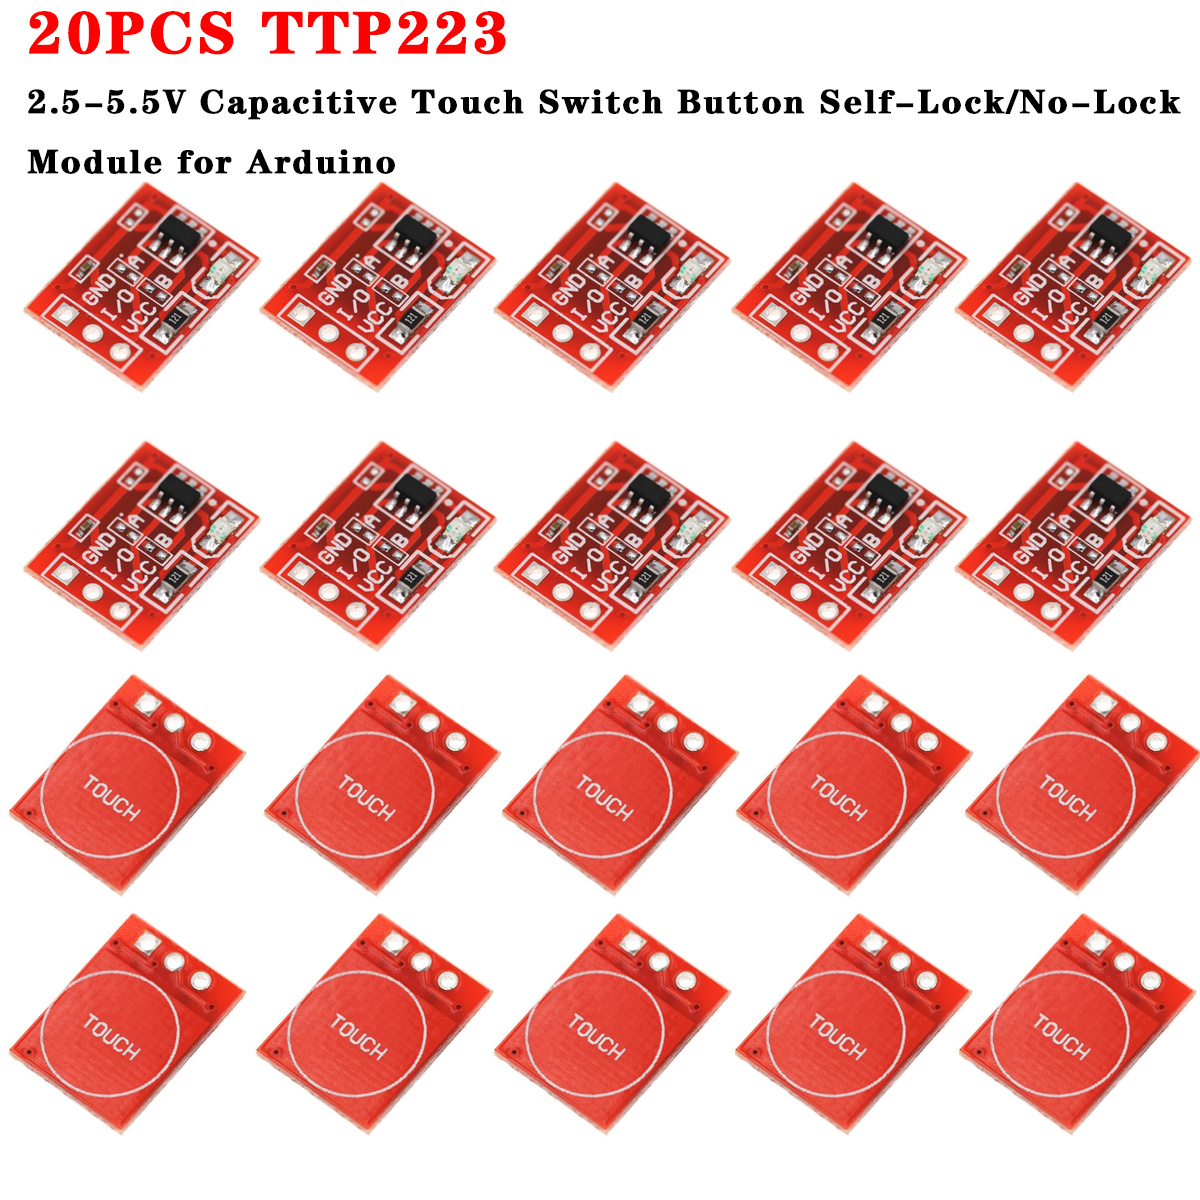 20pcs TTP223 Module De Bouton De Commutation Tactile Capacitif -  Auto-verrouillage / Non-verrouillage Pour Arduino - 2,5-5,5V - Temu Belgium